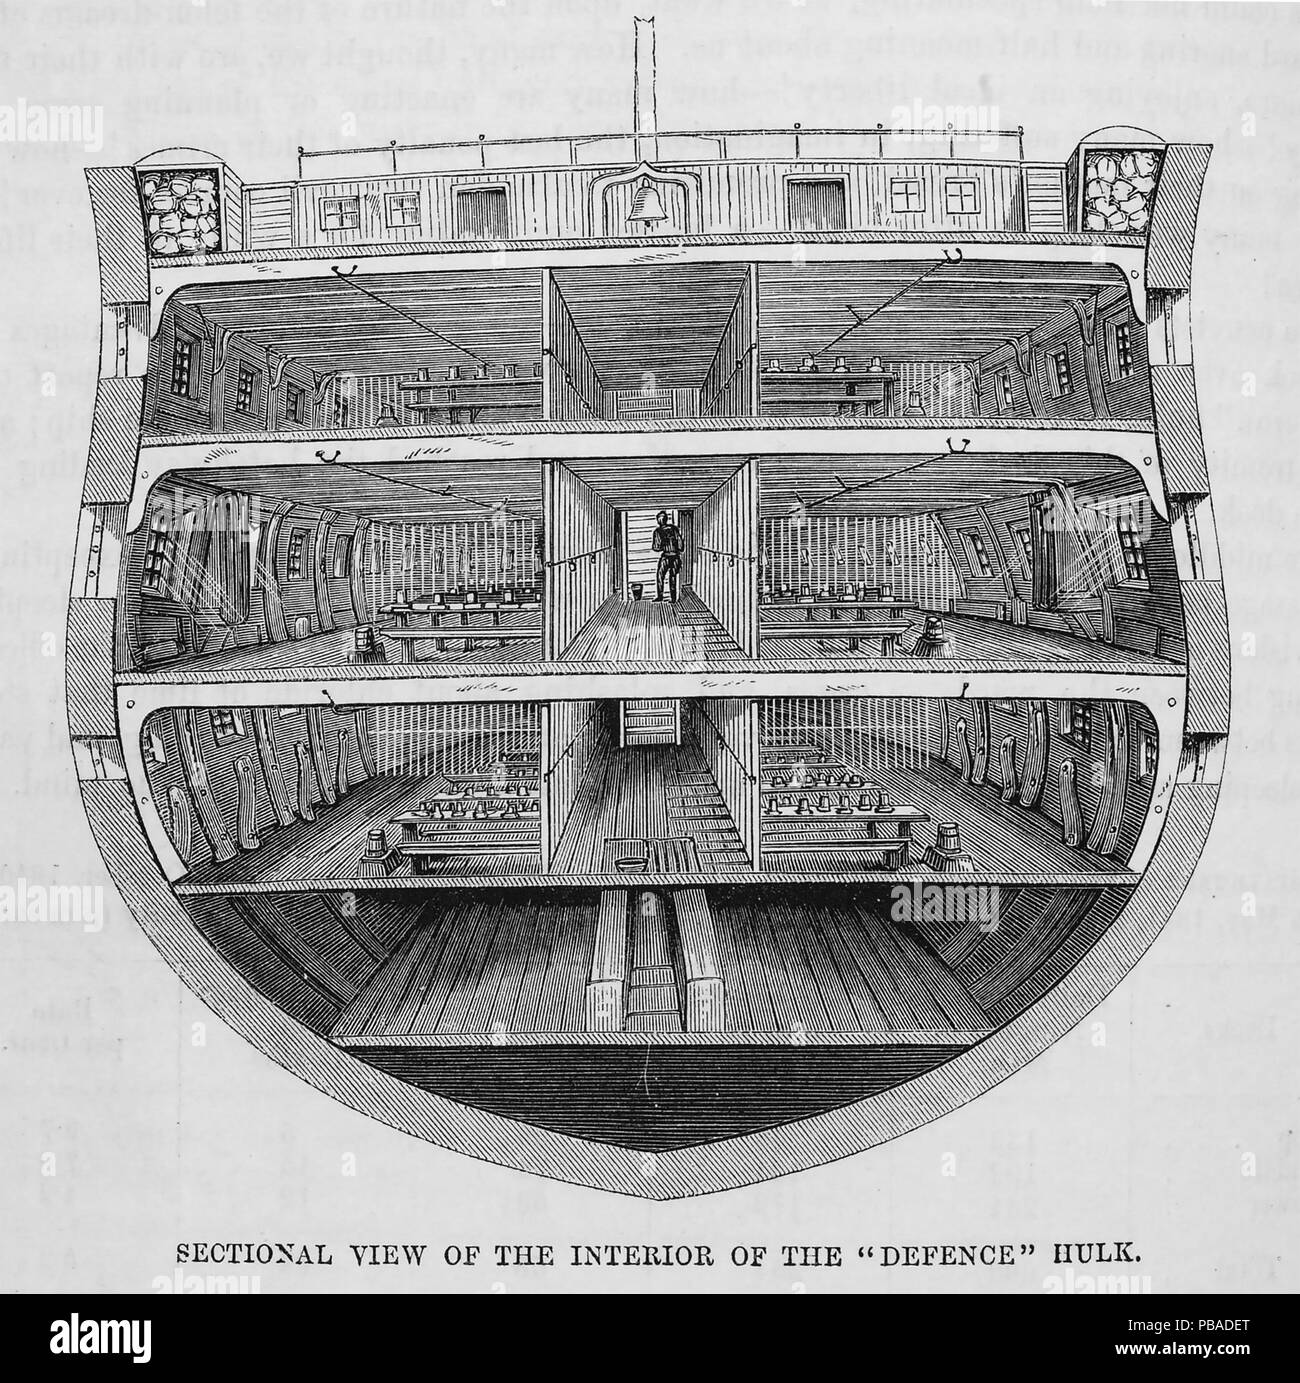 HULK Victoriano cárceles. Sección transversal de la des-encargó 74-gun tercer buque tipo "defensa" utilizado como buque prisión hulk en Woolwich y Portsmoutyh desde 1850 hasta 1857 Foto de stock